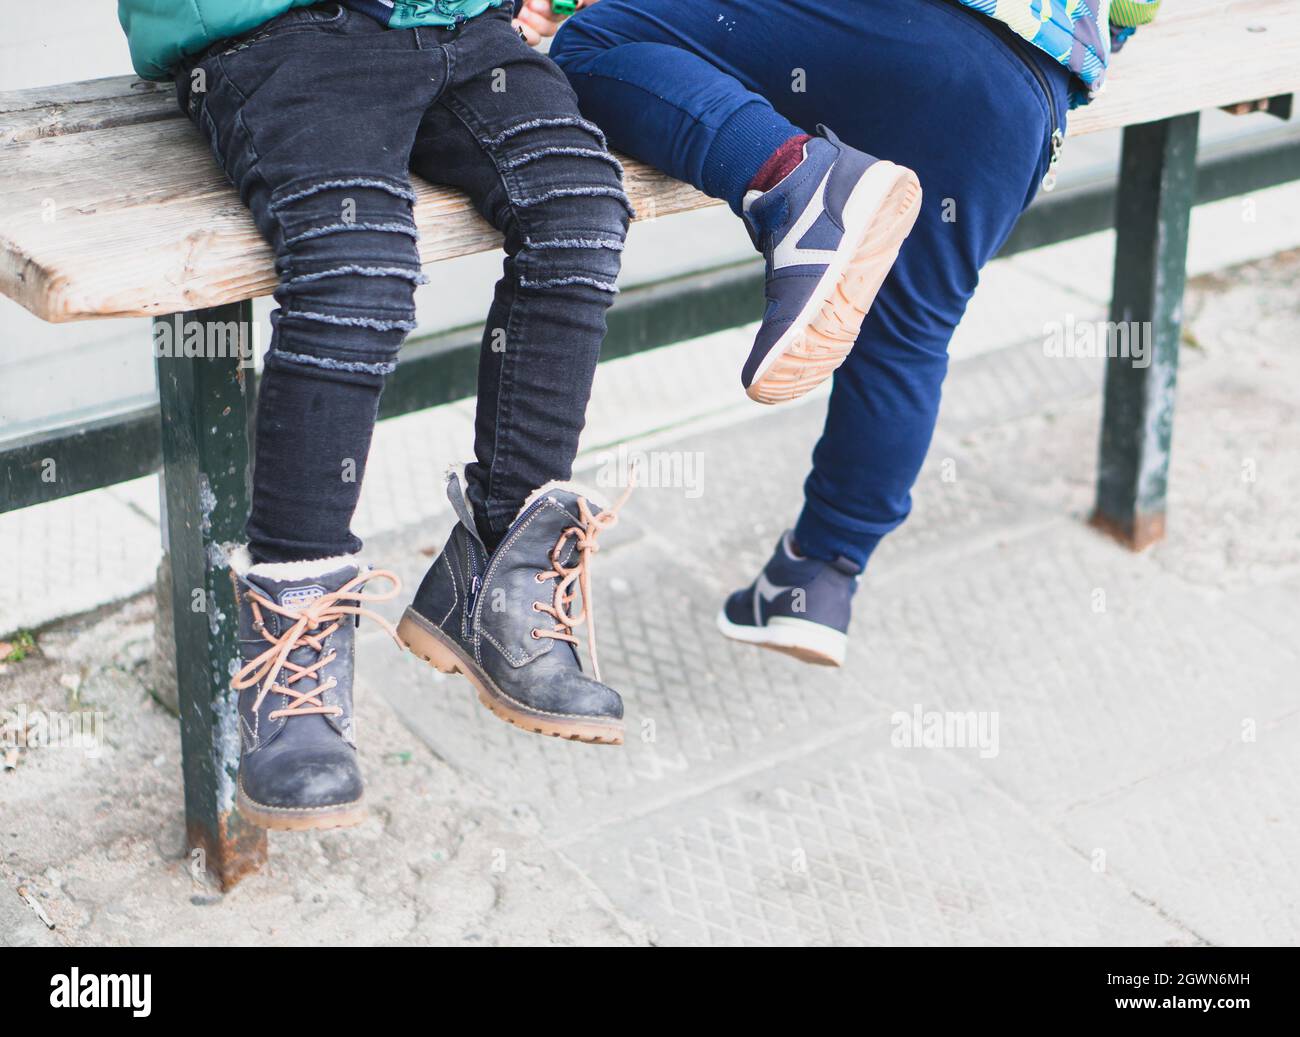 POSEN, POLEN - 24. März 2018: Eine Aufnahme von Kinderbeinen auf einer Holzbank mit Schuhen im Park Stockfoto